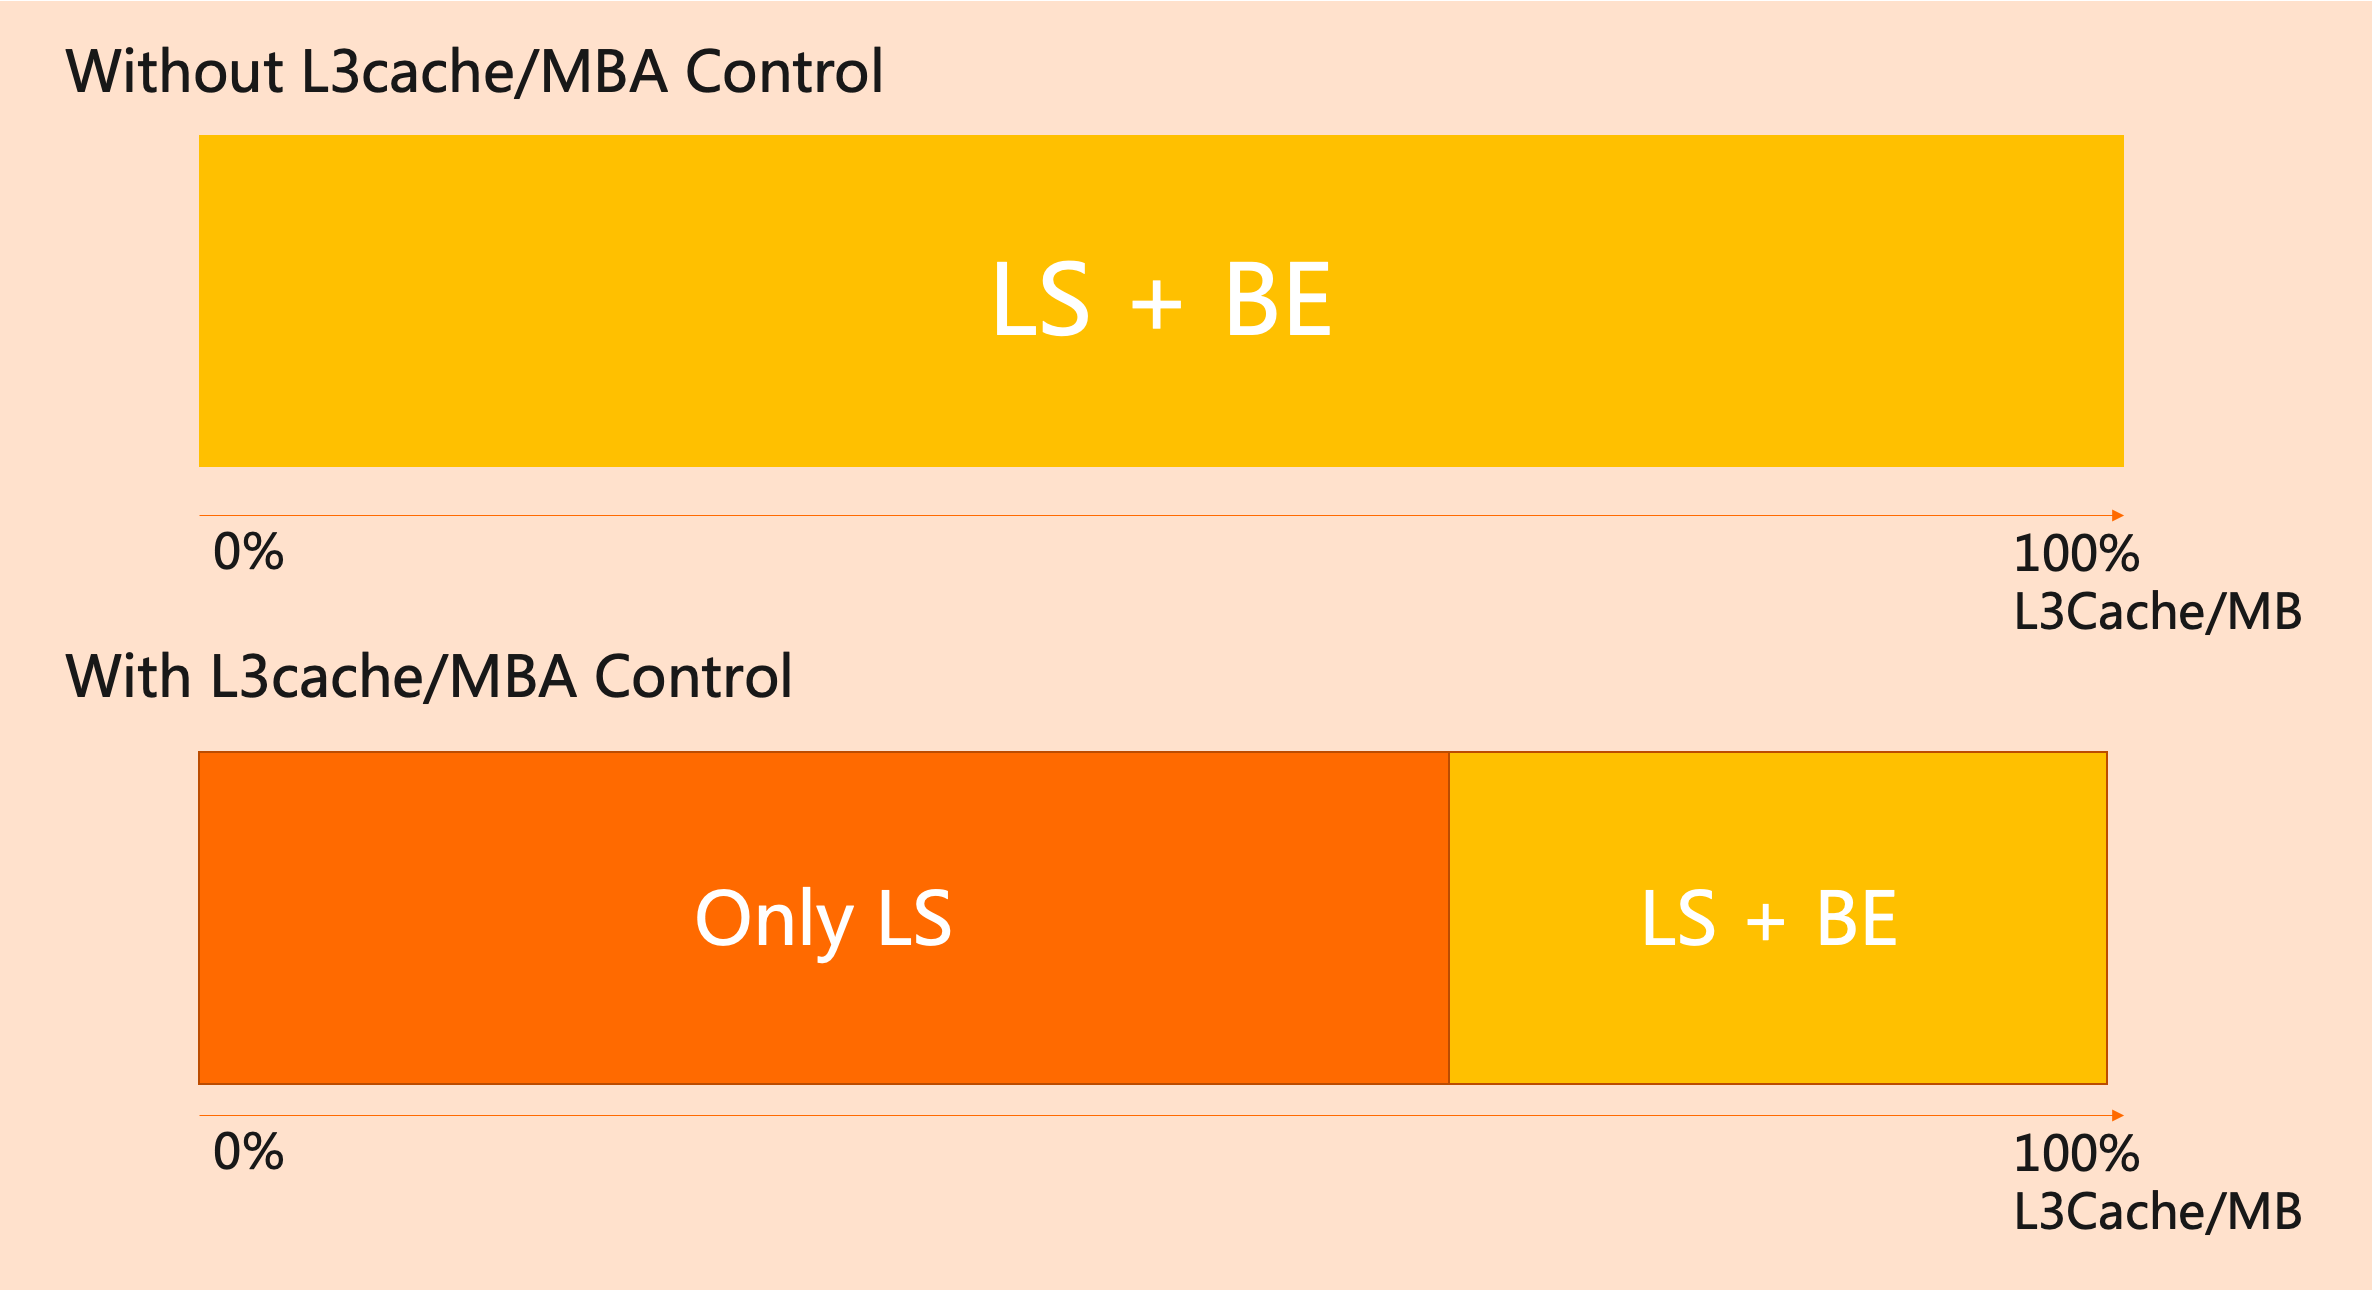 L3/MBA Control